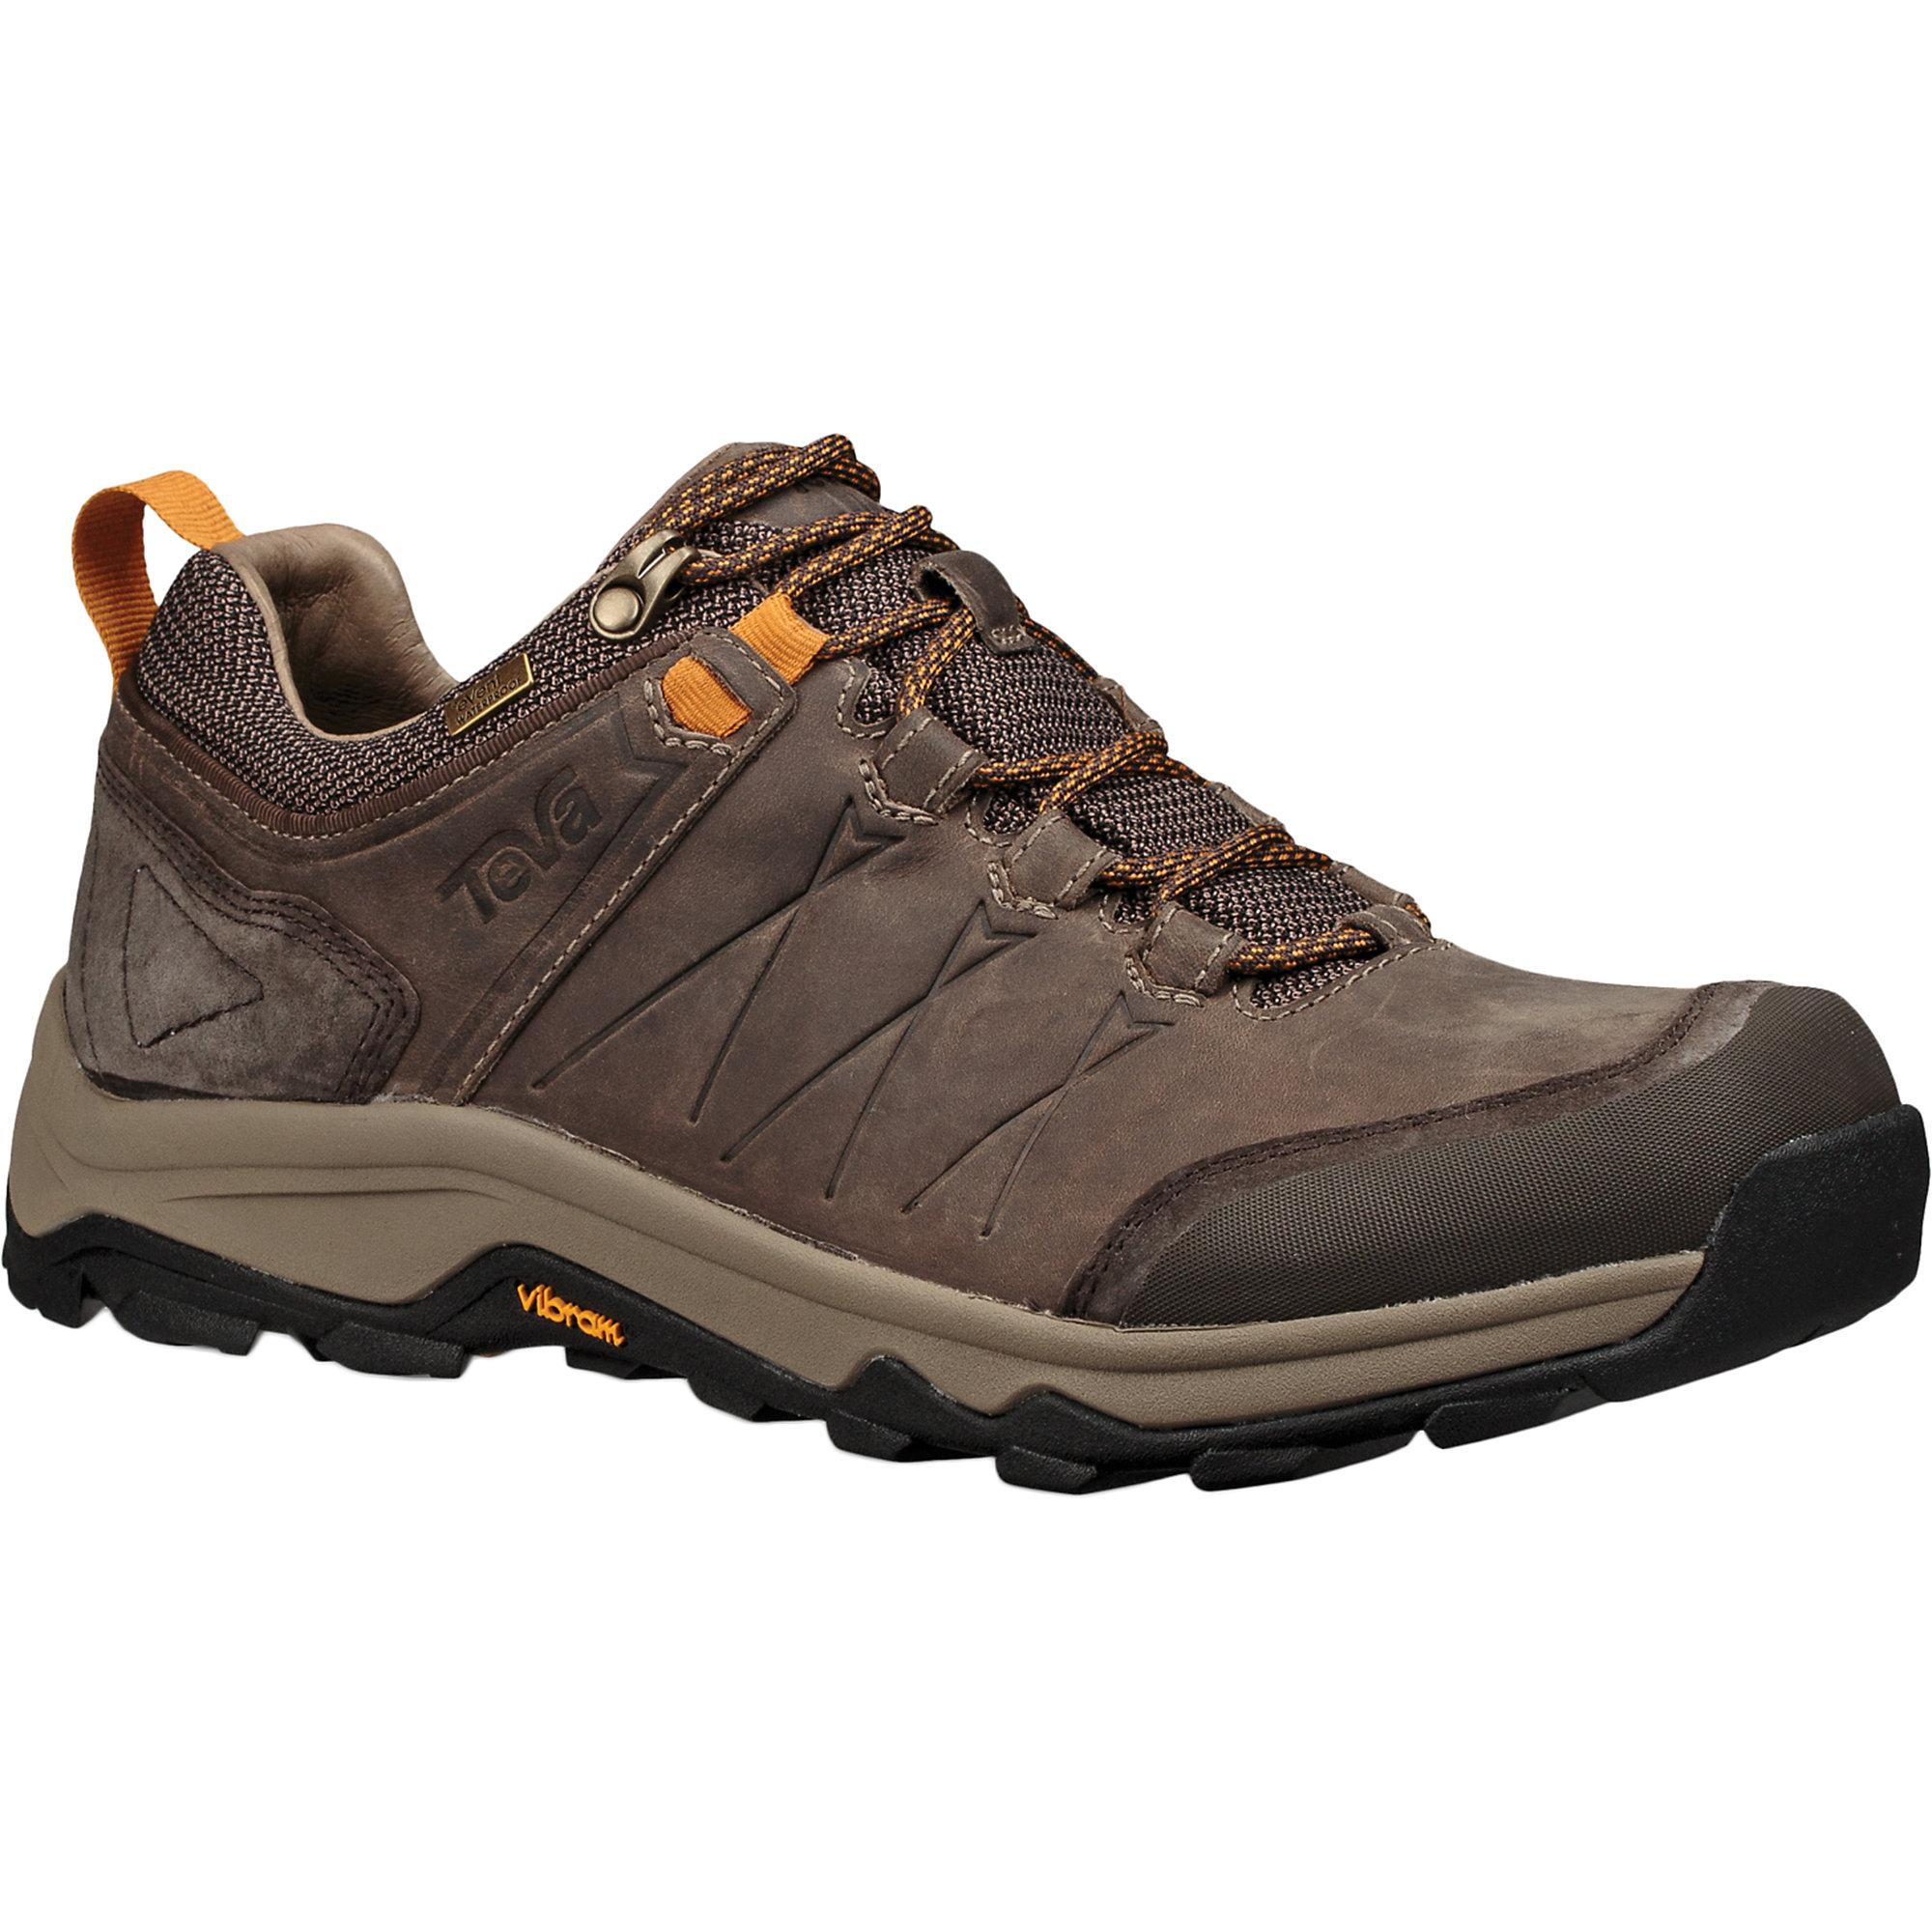 Teva Rubber Arrowood Riva Waterproof Shoe in Walnut (Brown) for Men - Lyst